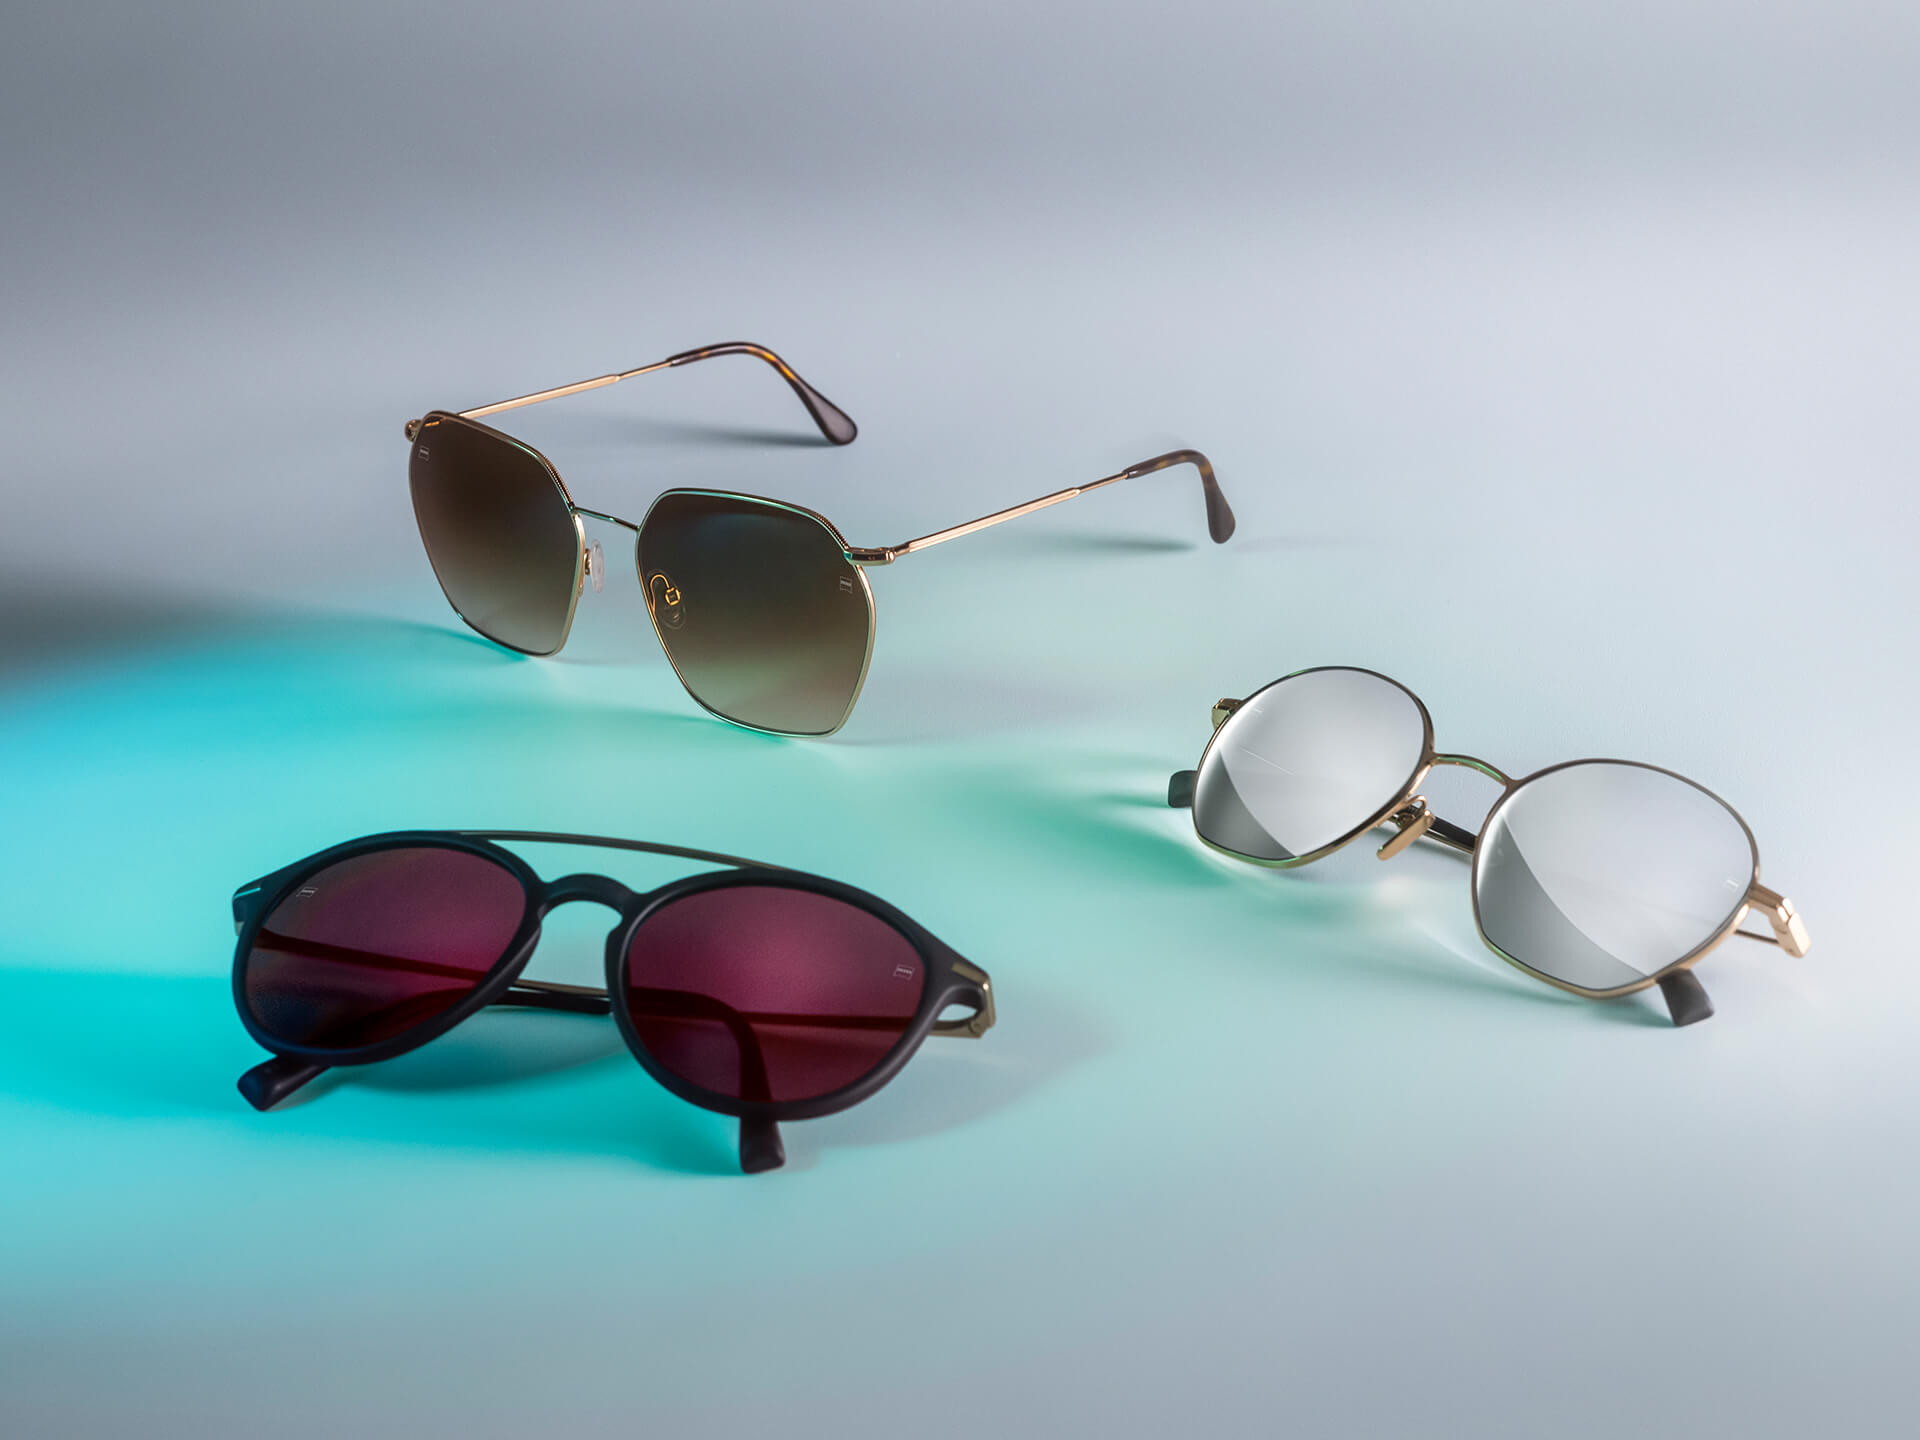 Três pares de óculos de sol com diferentes lentes coloridas para óculos de sol da ZEISS, contendo tratamentos DuraVision Sun, DuraVision Mirror e Flash Mirror, visíveis sobre um fundo branco com reflexo de luz azul.